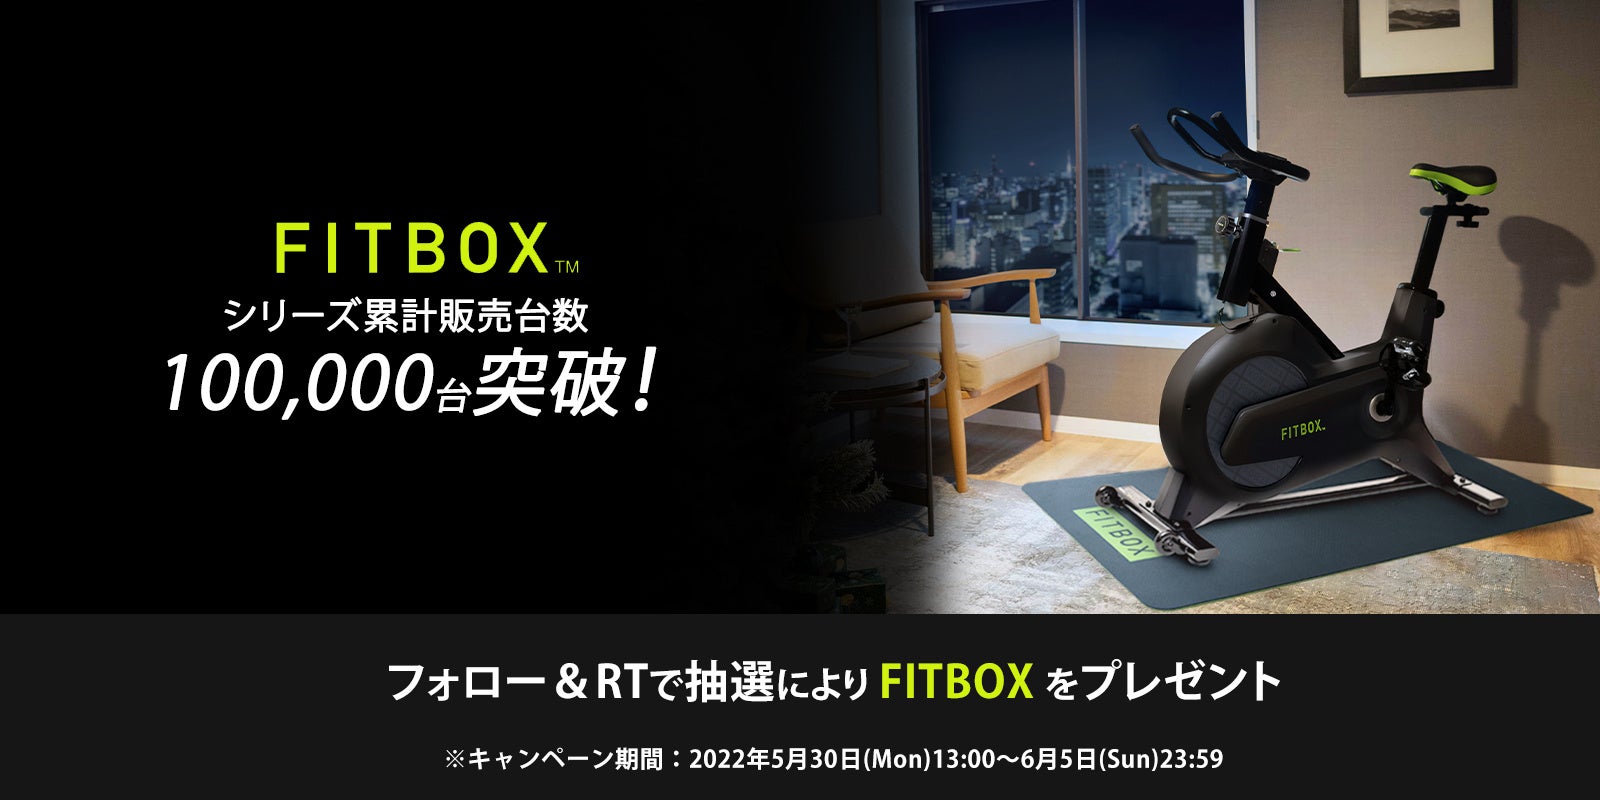 フィットネスブランド「FITBOX」が累計販売台数10万台突破！「FITBOX」が抽選で10名様に当たる「FITBOX10万台突破記念プレゼントキャンペーン」 開催